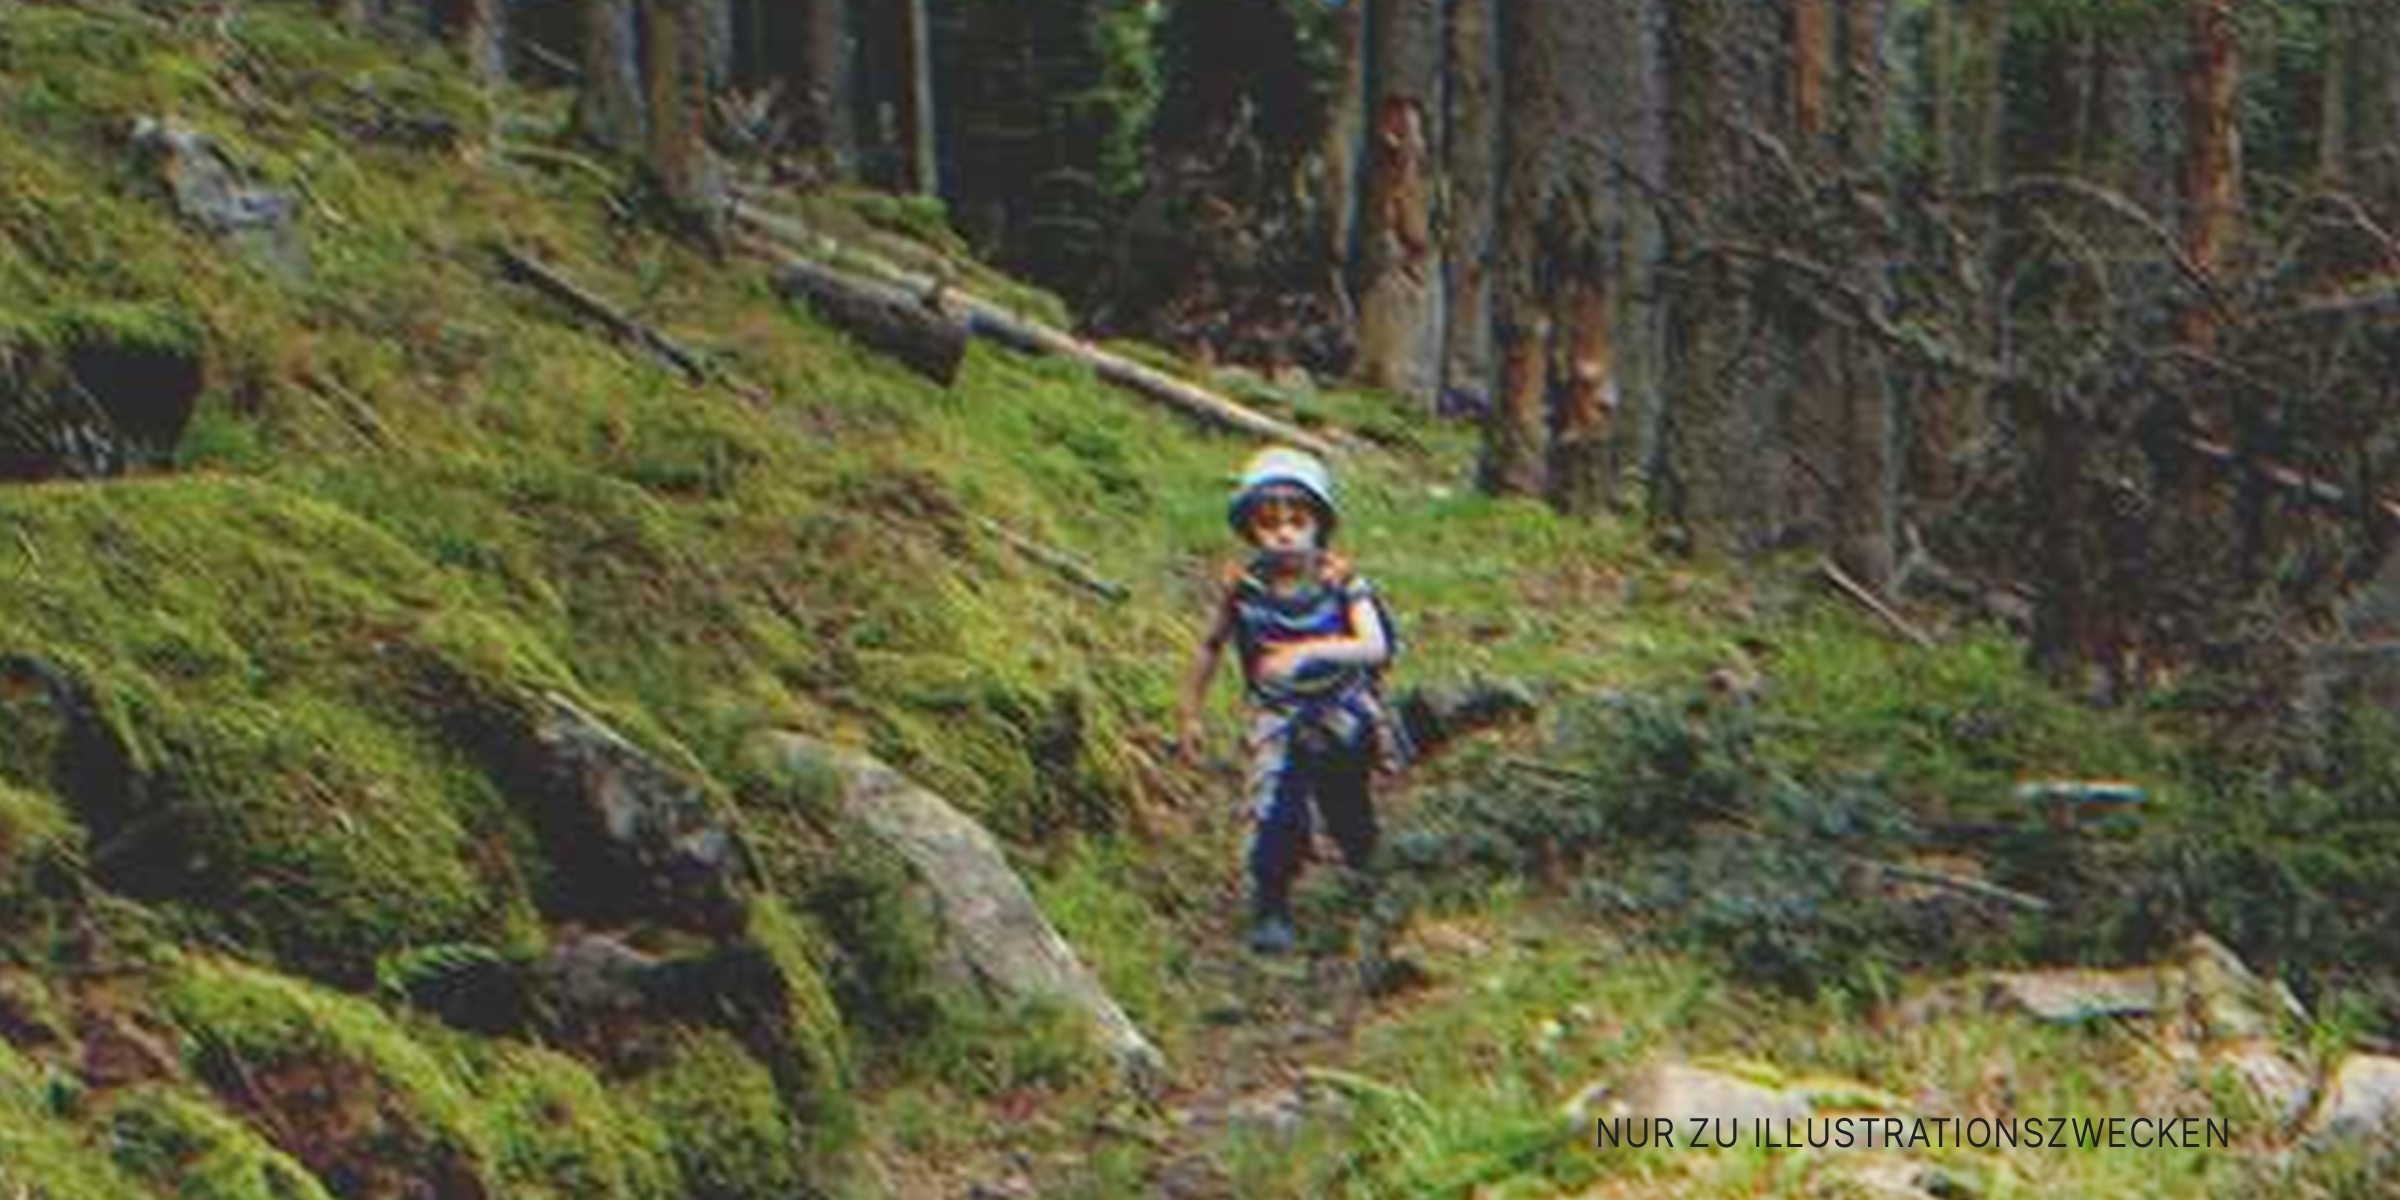 Ein kleiner Junge in dem Wald | Quelle: Shutterstock